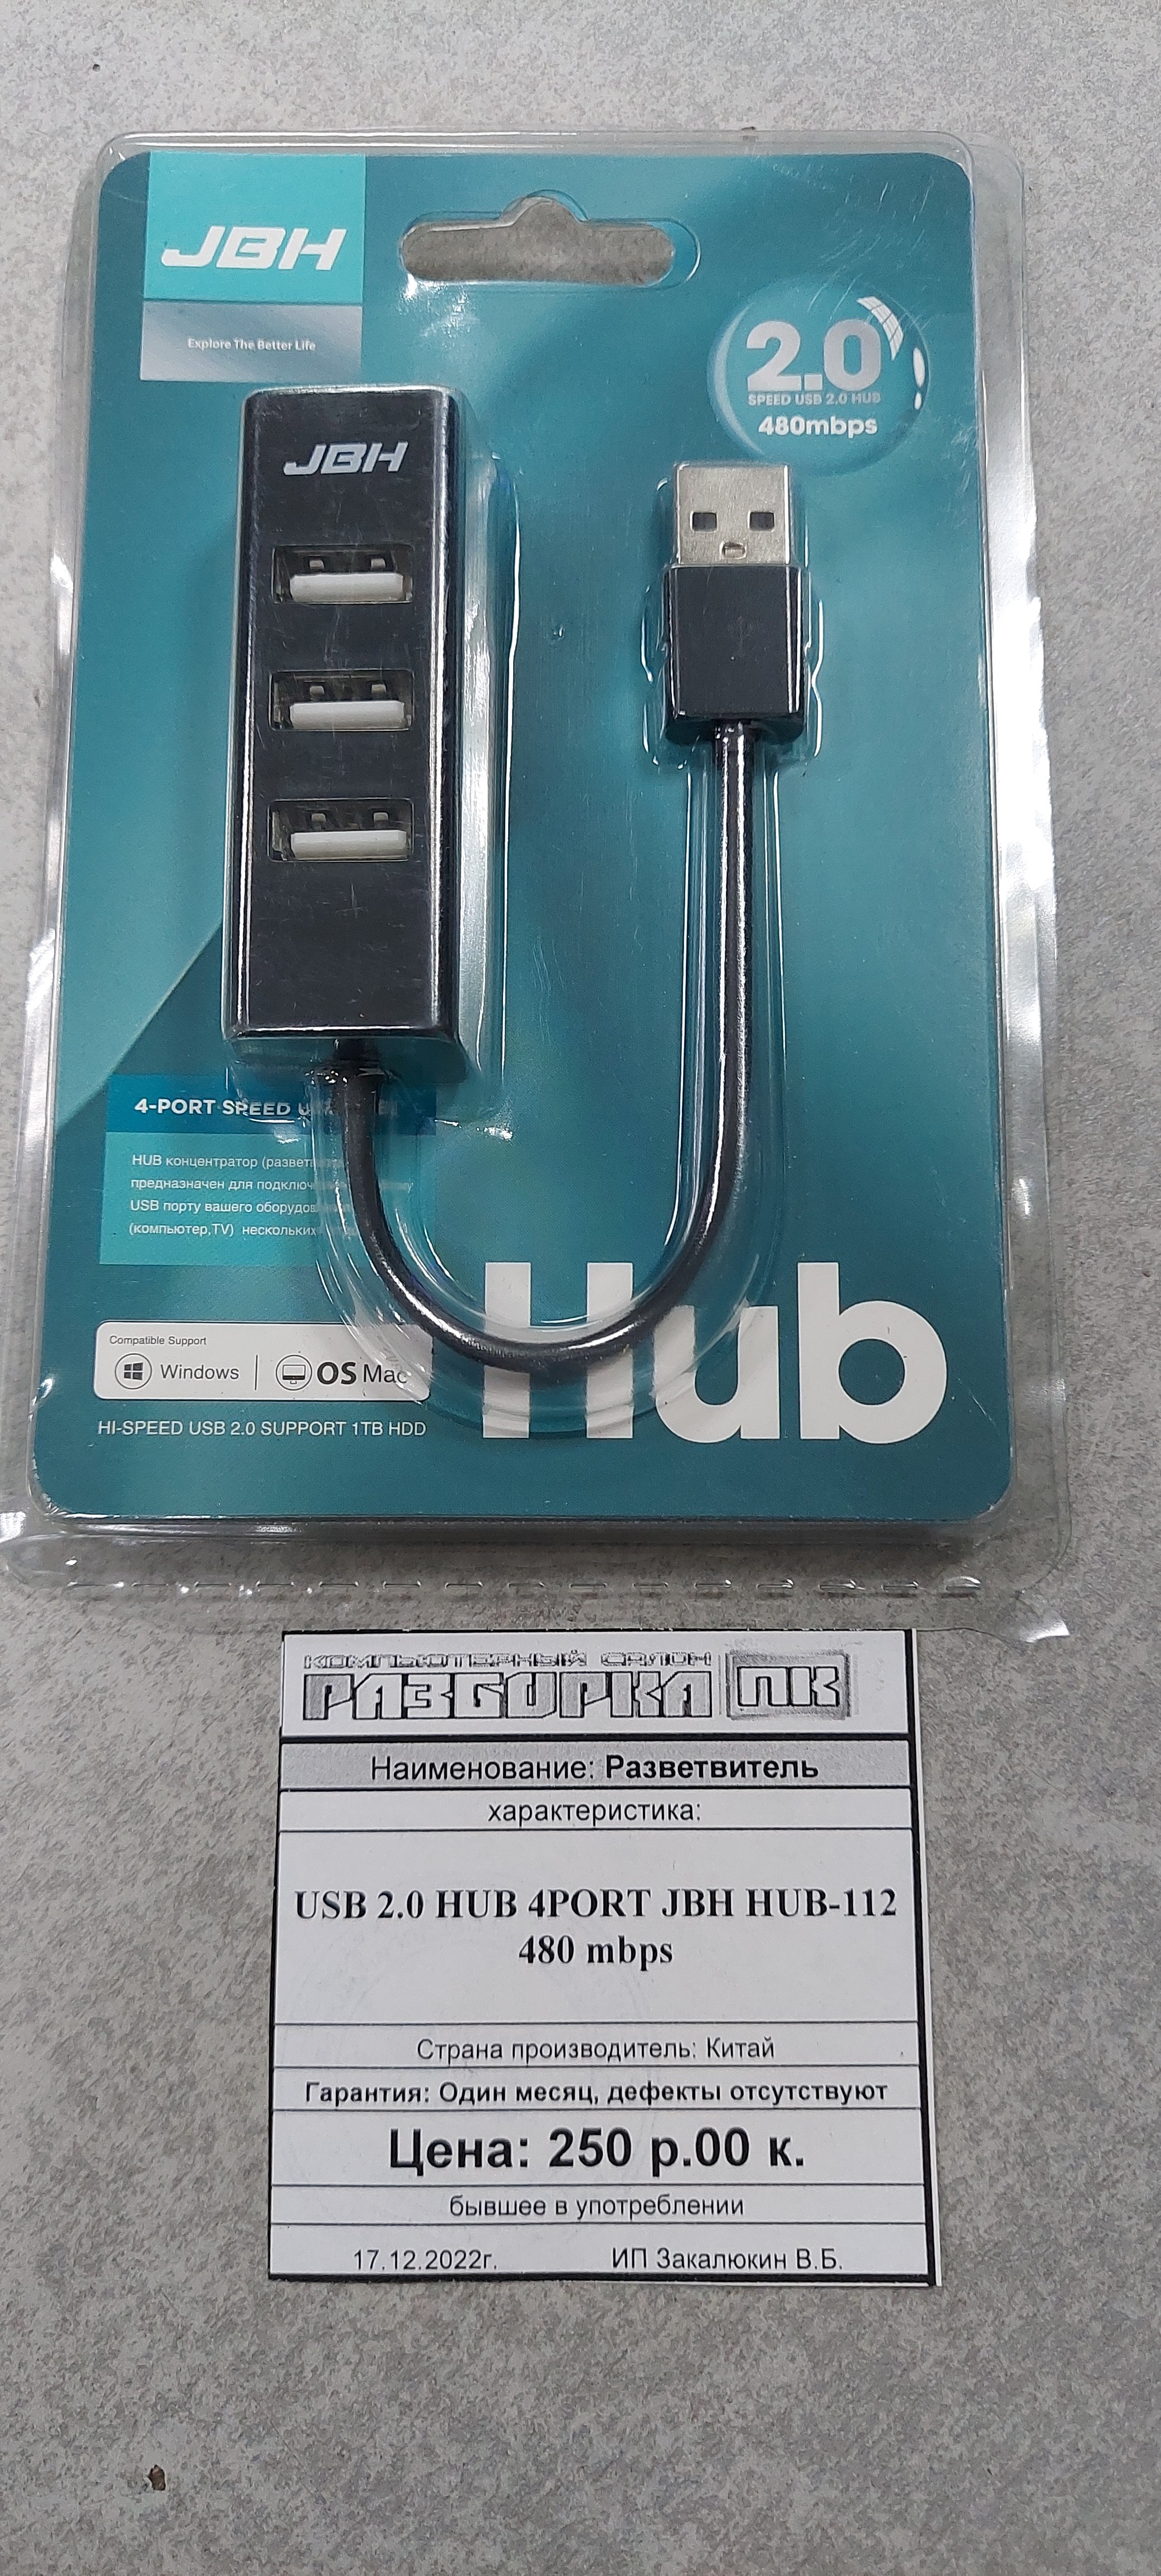 Разветвитель USB 2.0 HUB 4PORT JBH HUB-112 480 mbps